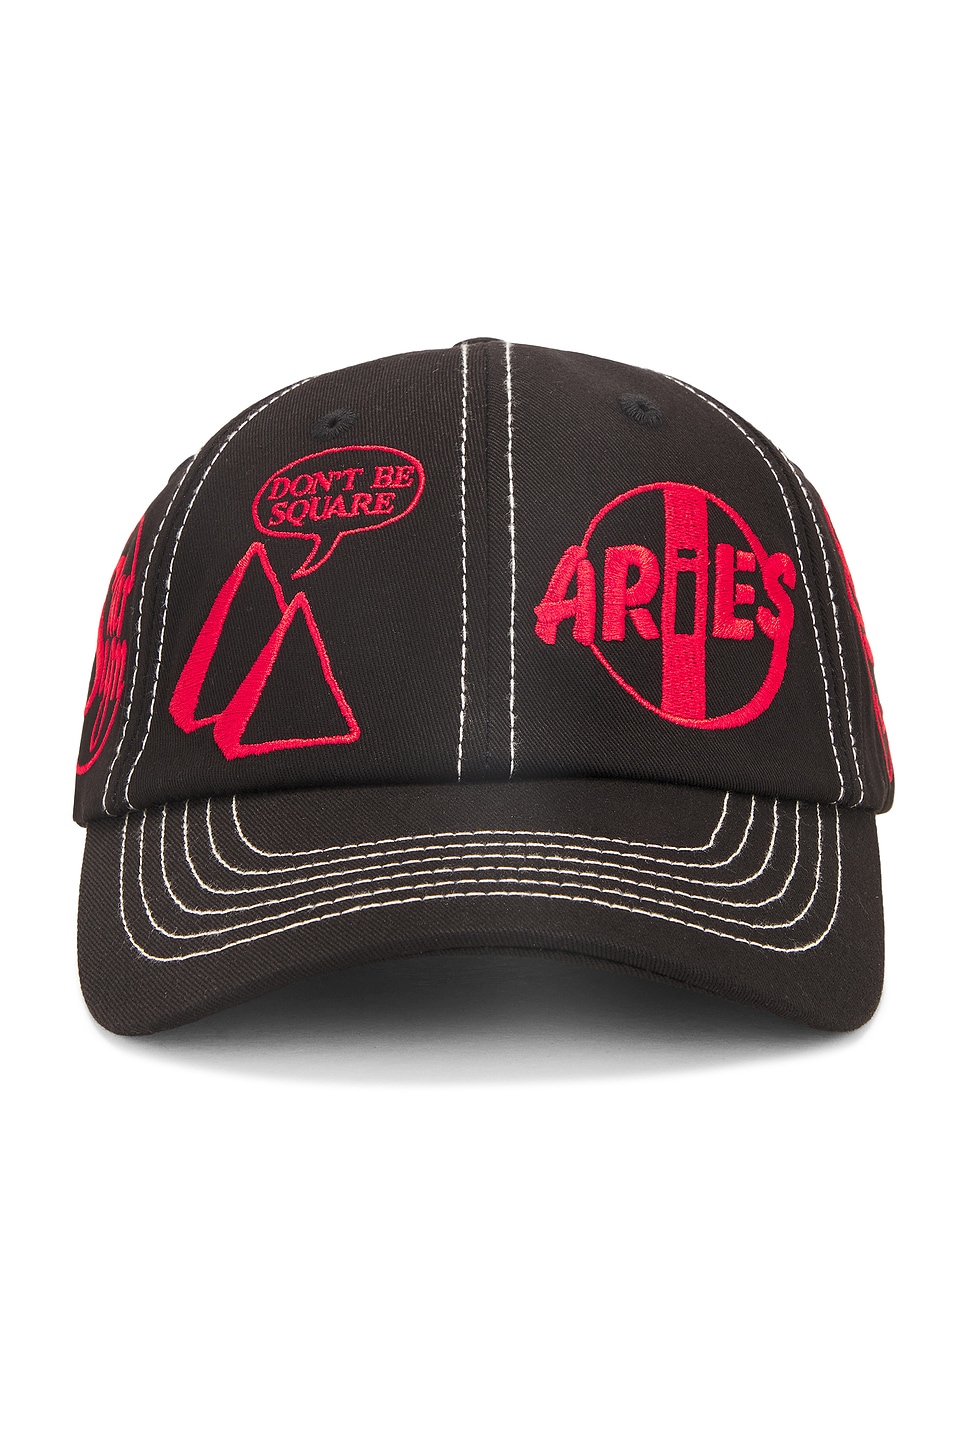 Aries 360 Cap In Black